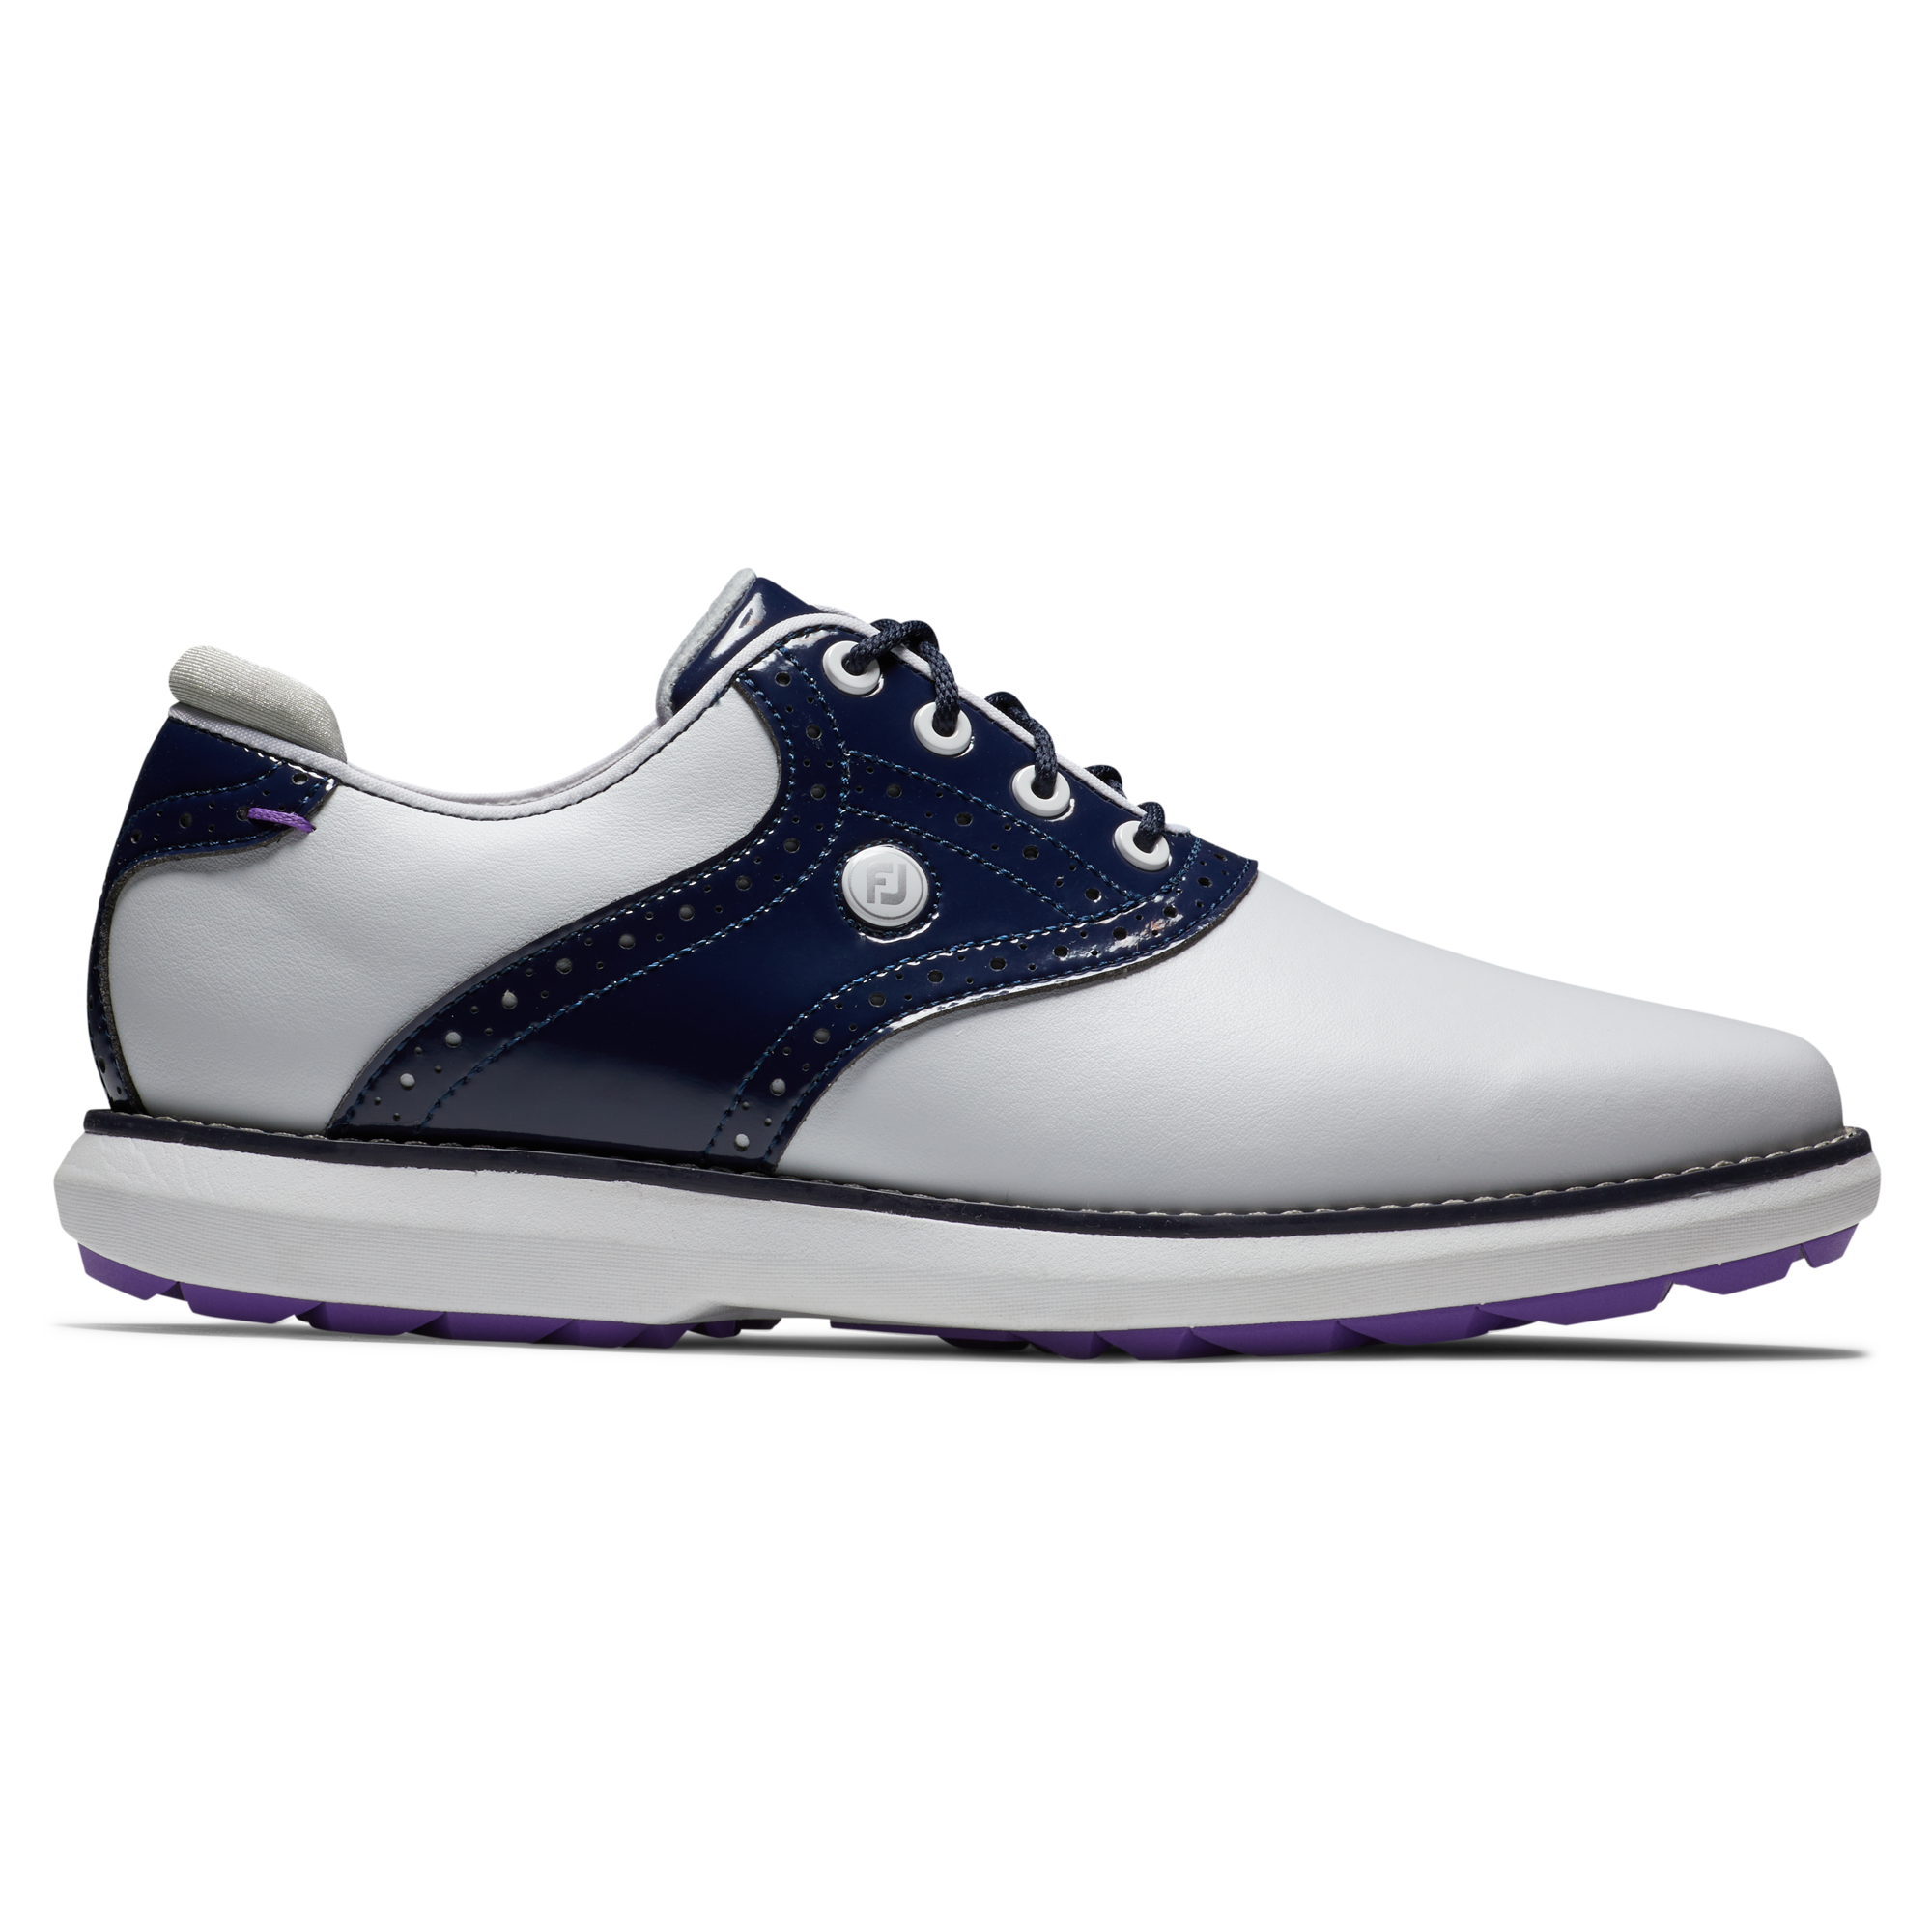 FootJoy Traditions Wide dámské golfové boty, bílé/tmavě modré, vel. 6 UK DOPRODEJ